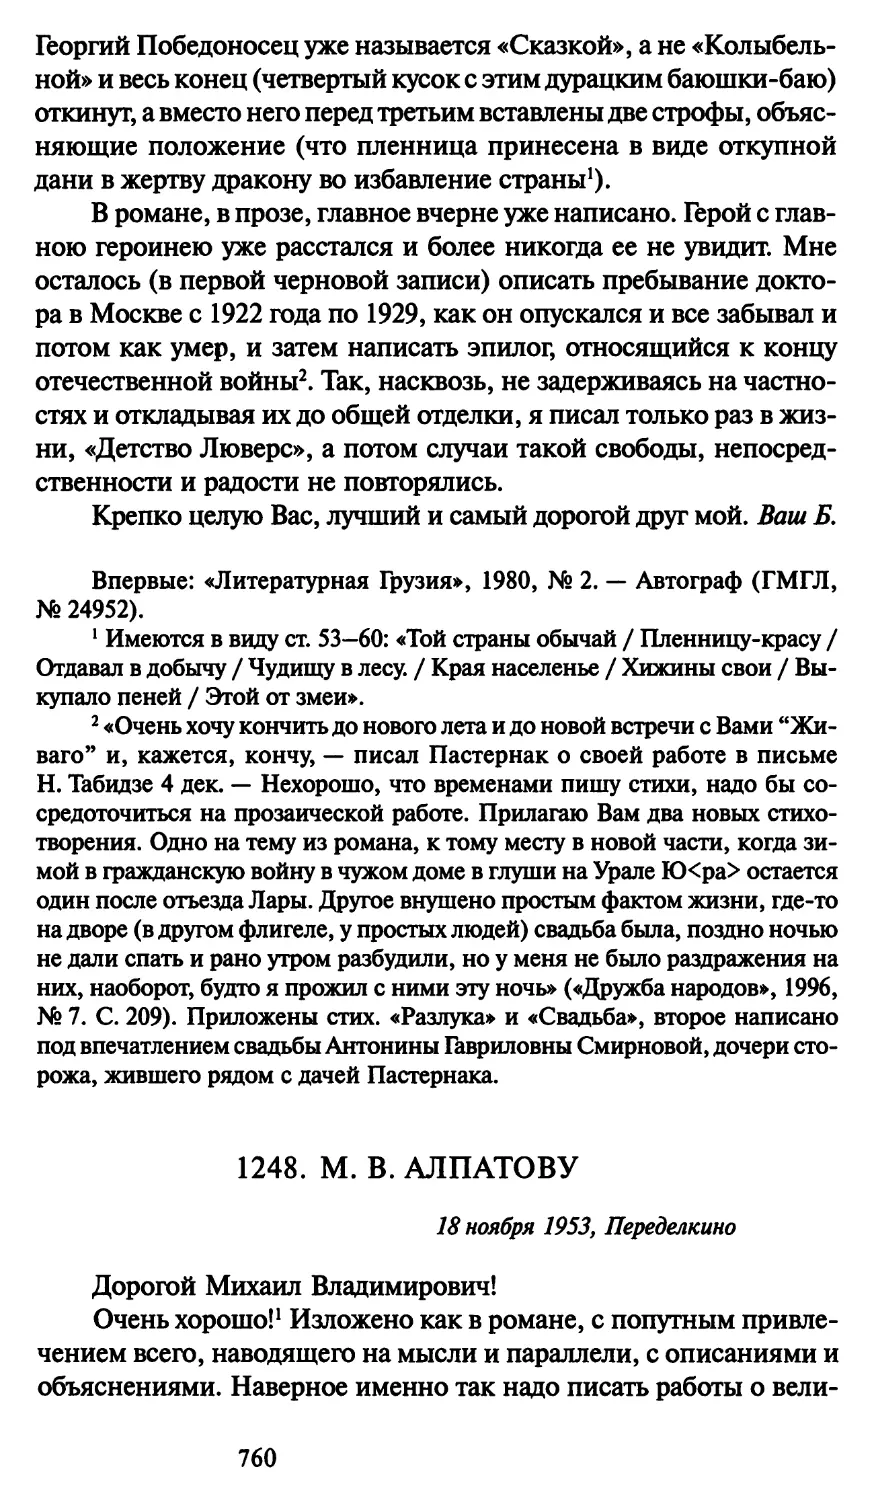 1248. М. В. Алпатову 18 ноября 1953